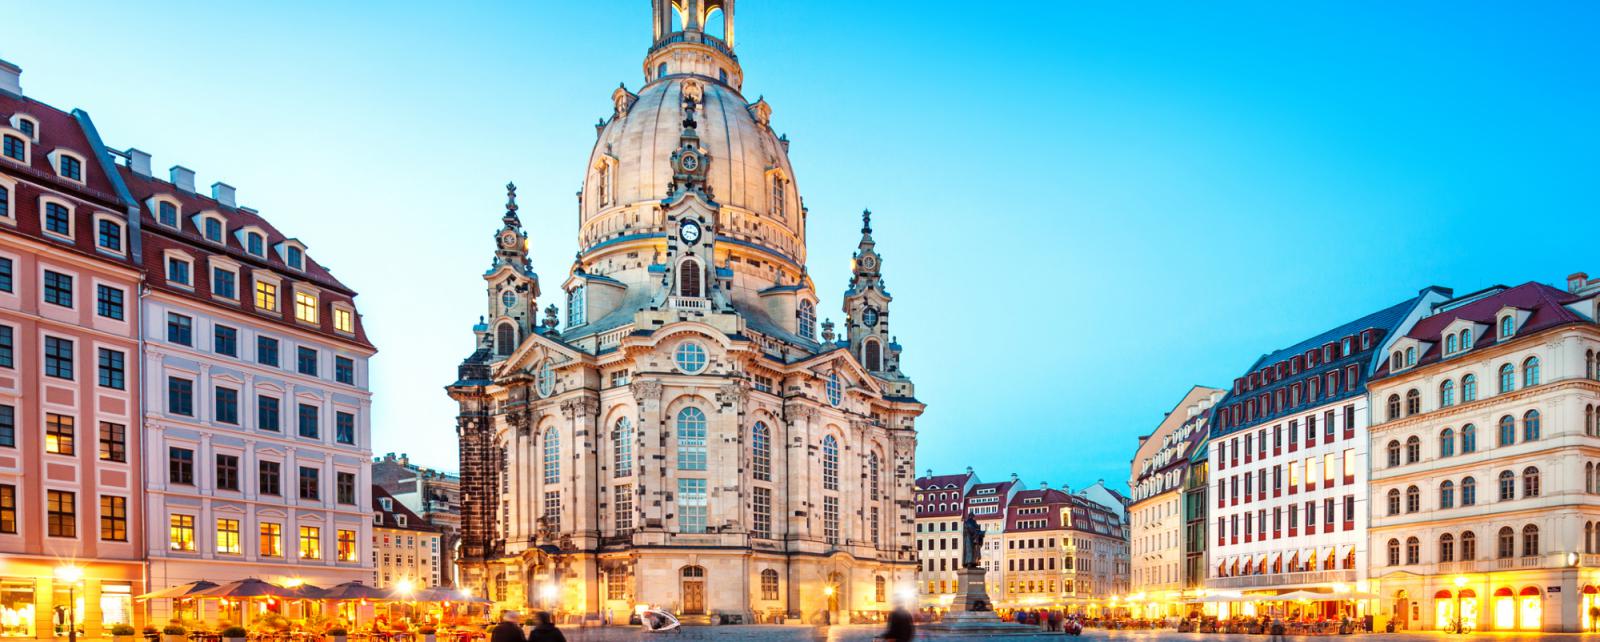 Highlights in 2020: Dresden 